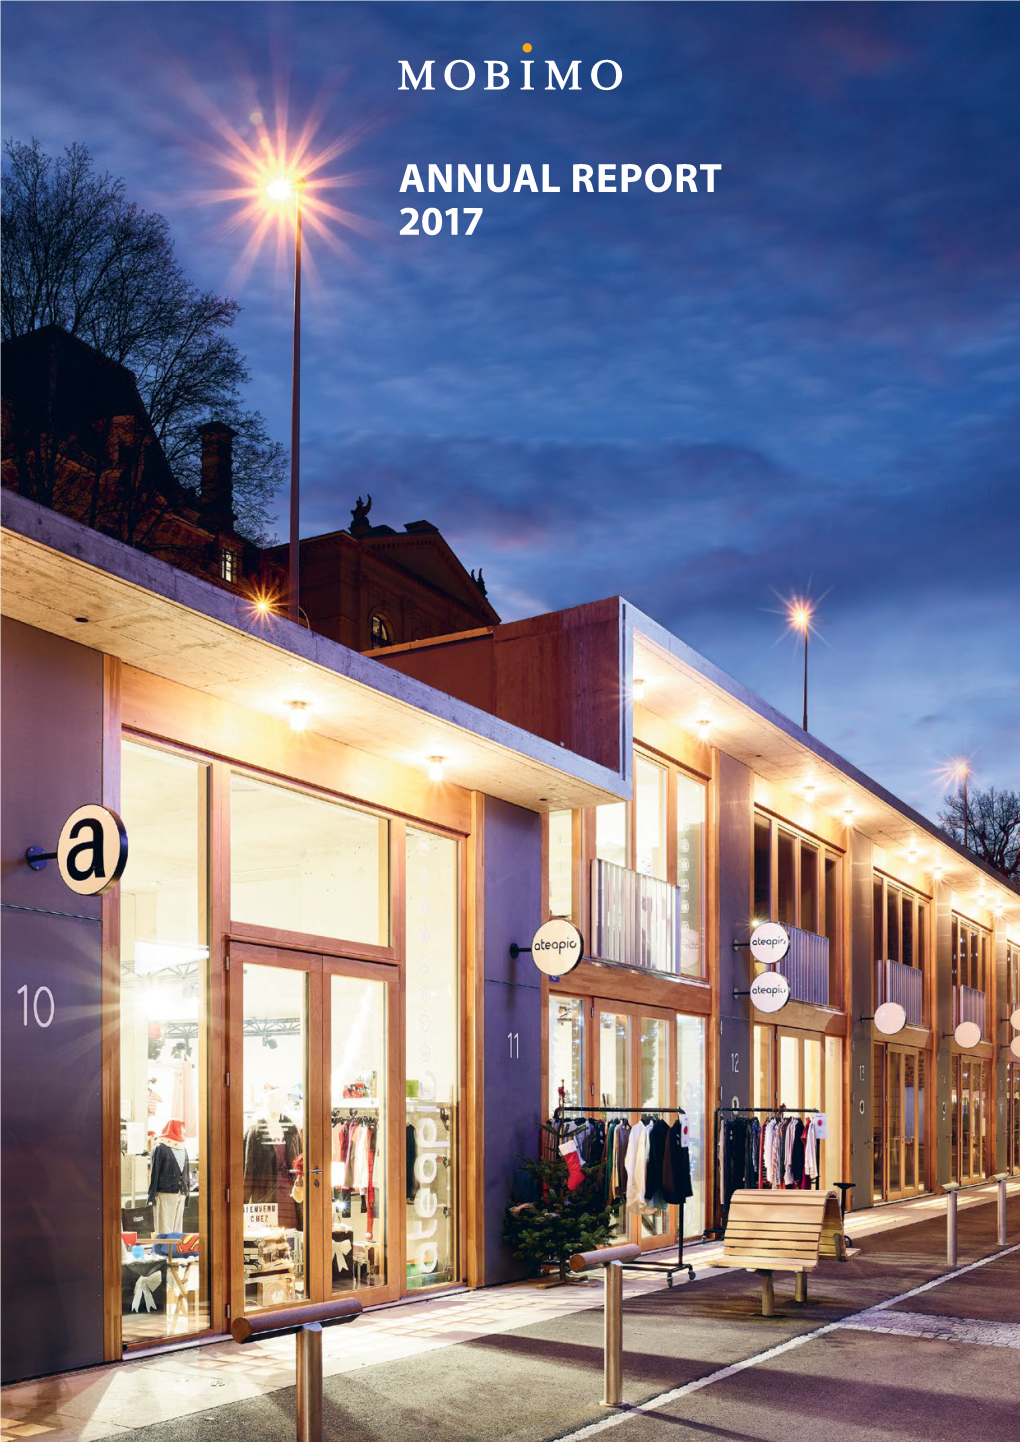 Annual Report 2017 2017 Annual Report Report Annual